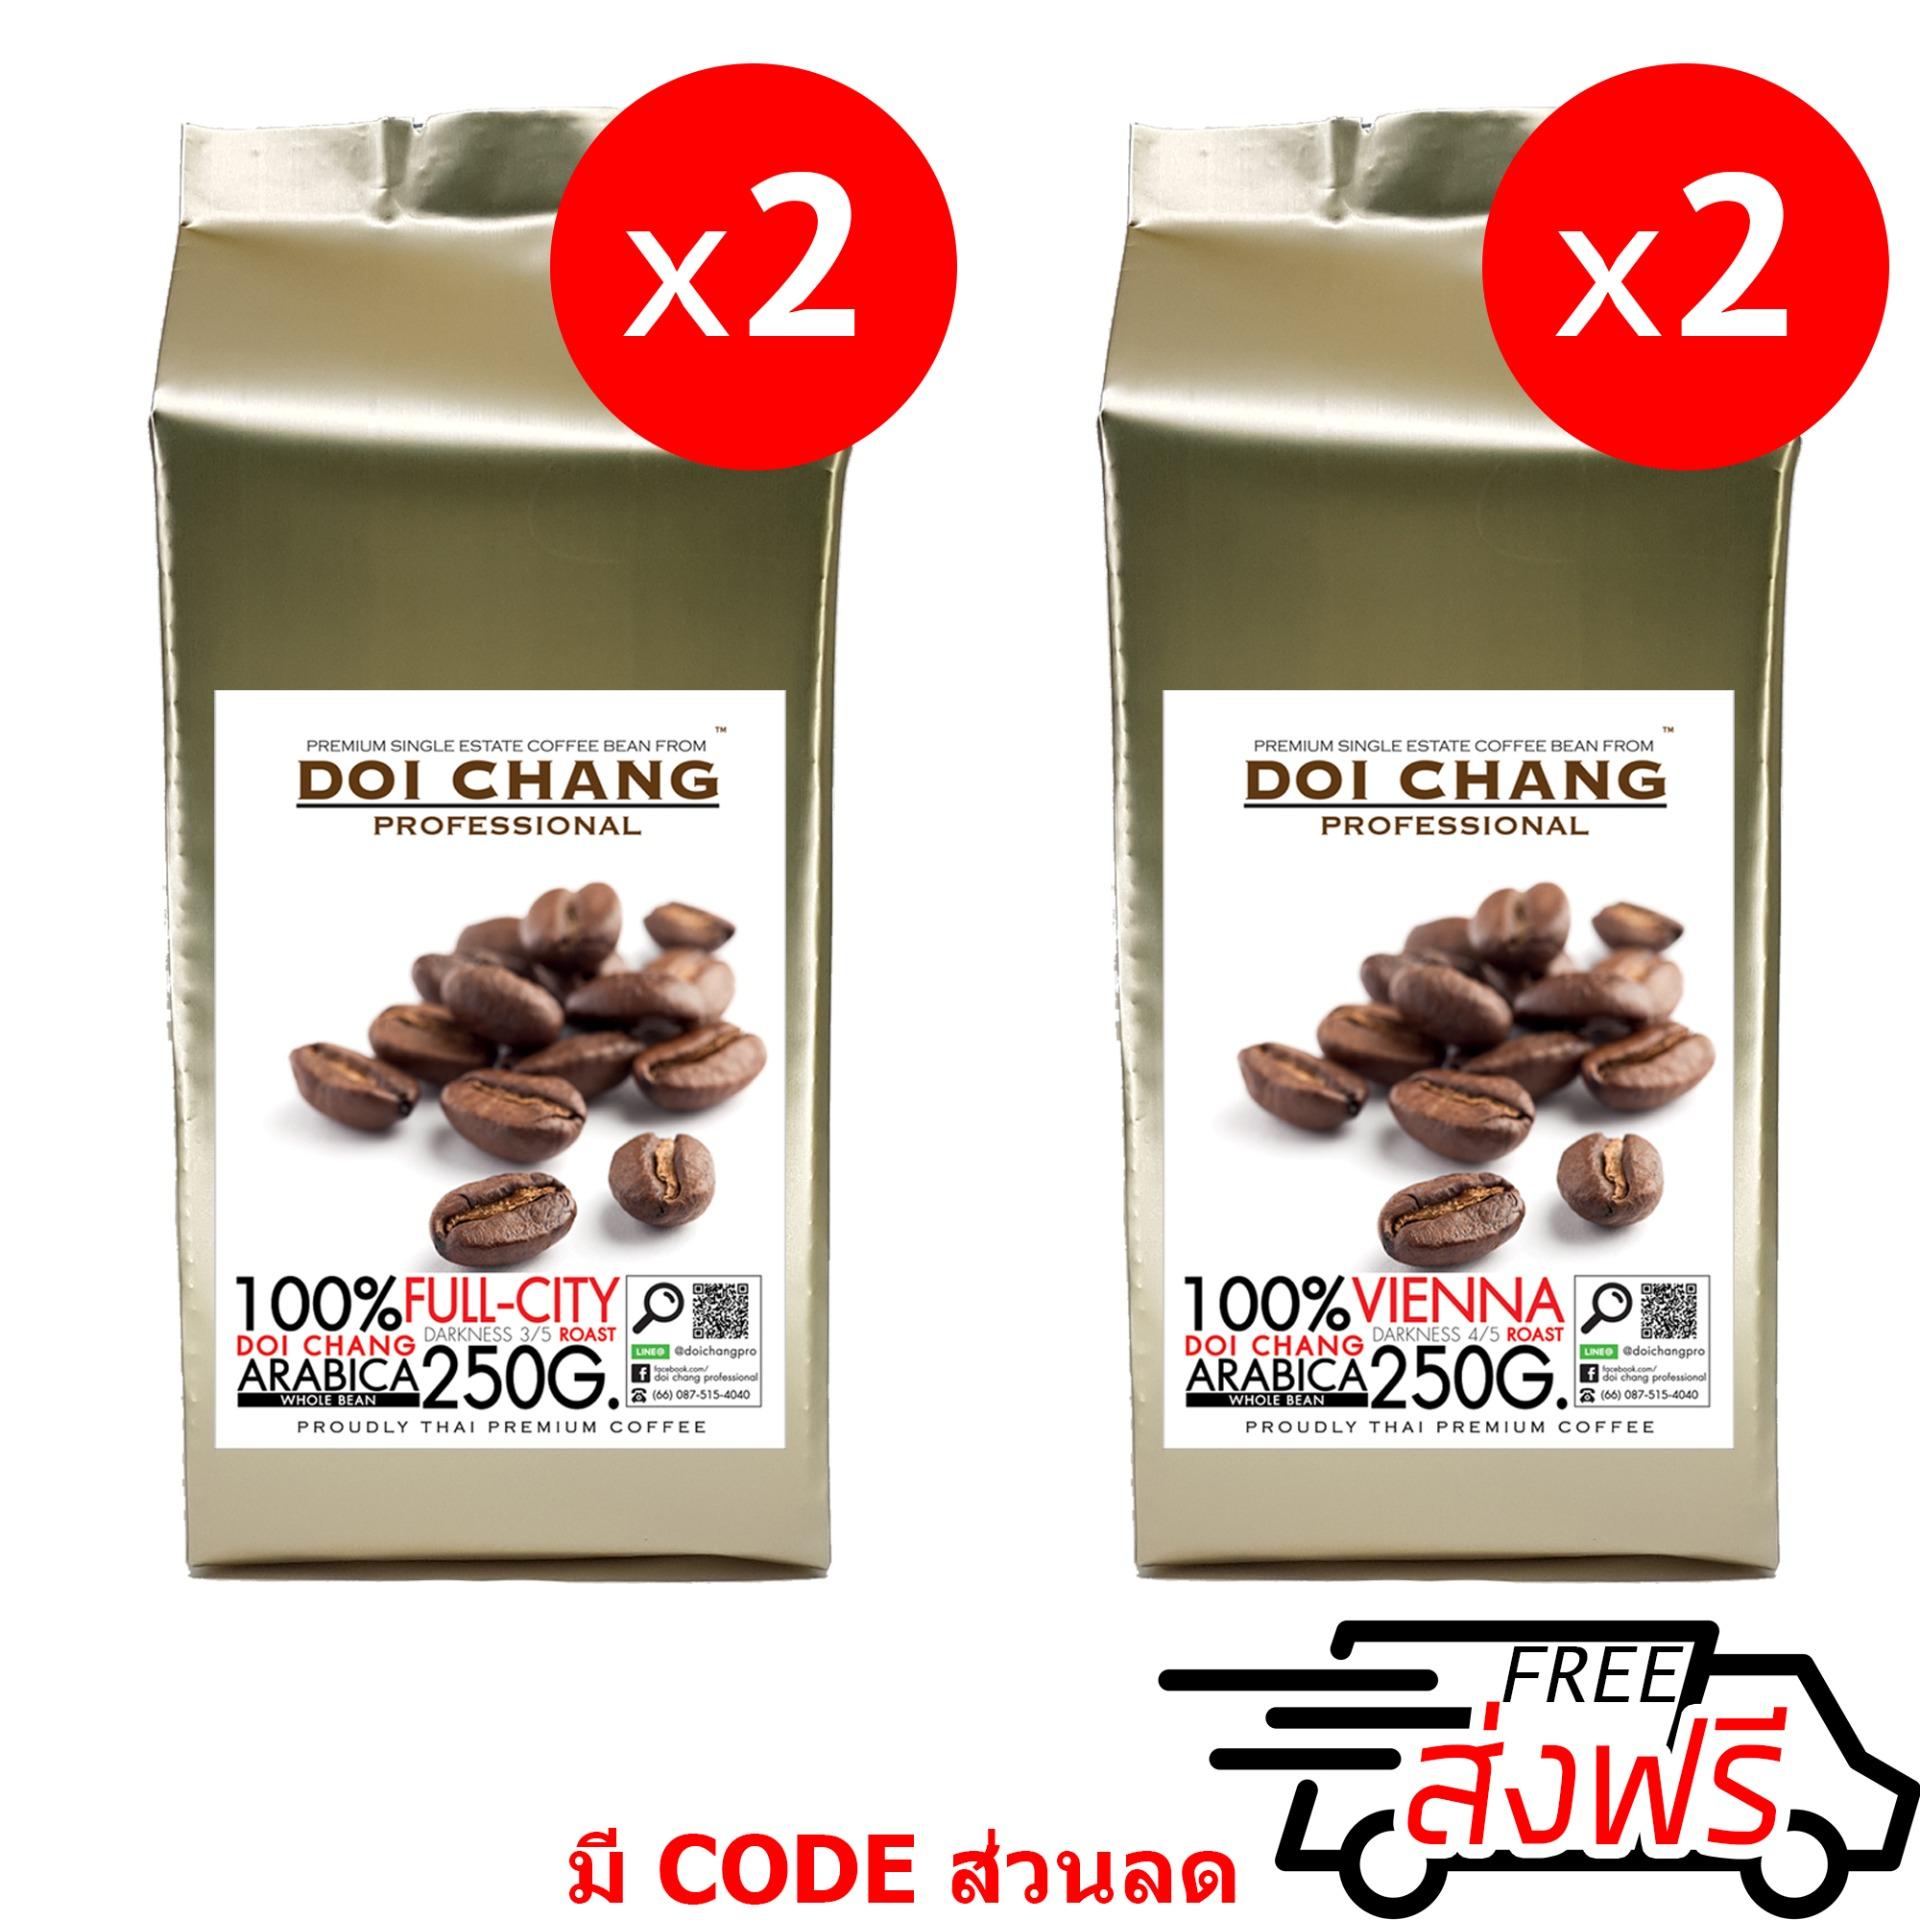 กาแฟอราบิก้า ดอยช้าง คั่วอ่อน 2 ถุง+คั่วกลาง 2 ถุง Full-City 2 bag + Vienna 2 bag รวม 1 kg.(4x250g.) Doi Chang Professional แบบเมล็ด Doi Chang Professional Roasted Coffee Whole Bean เมล็ดกาแฟ จาก เมล็ดกาแฟดอยช้าง (กาแฟสด)